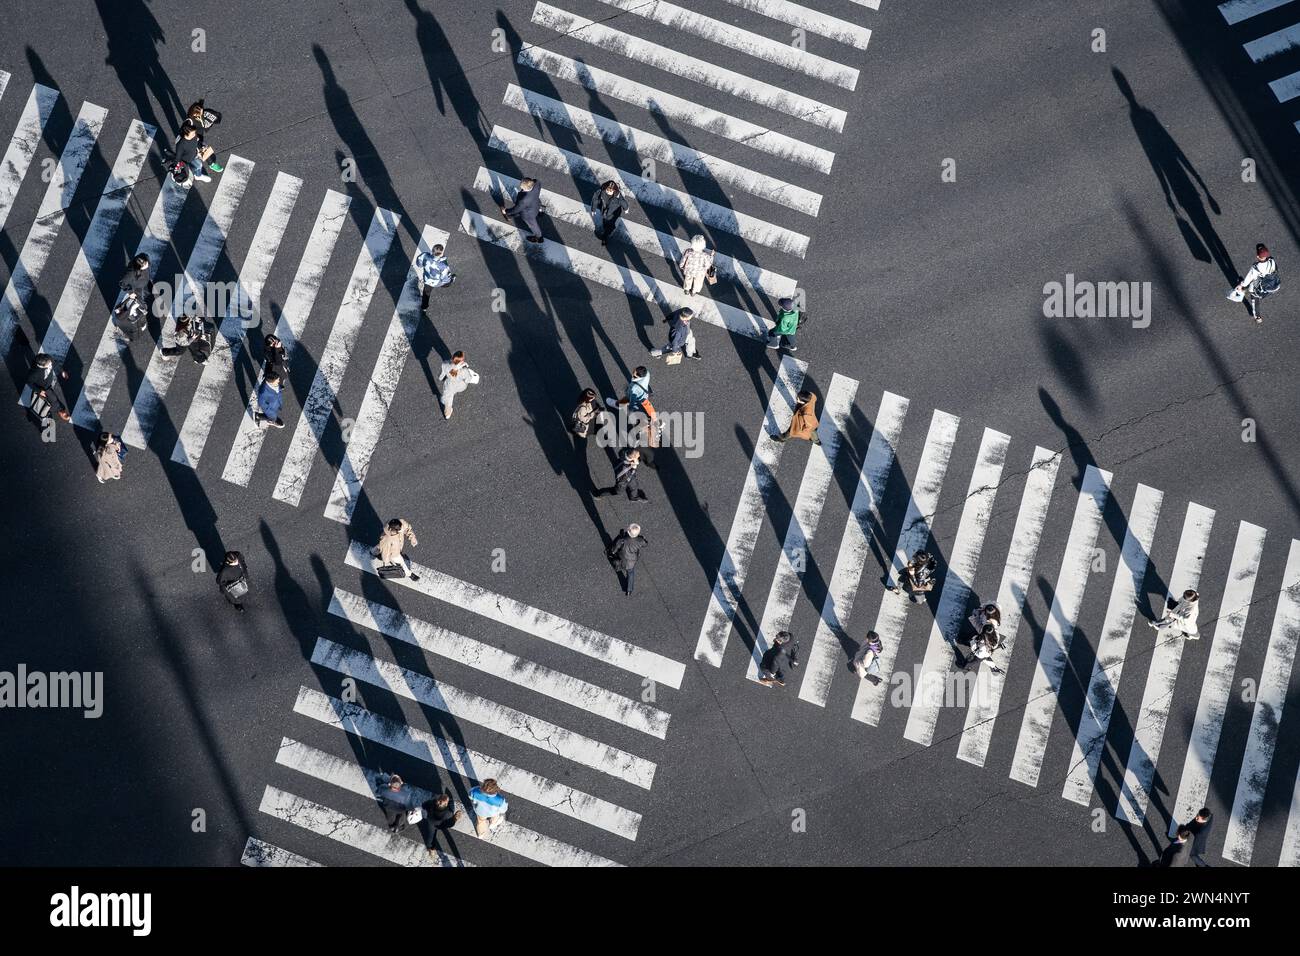 Fußgänger überqueren die Straße an einer geschäftigen Kreuzung in Ginza, einem beliebten gehobenen Einkaufsviertel von Tokio, Japan. Stockfoto